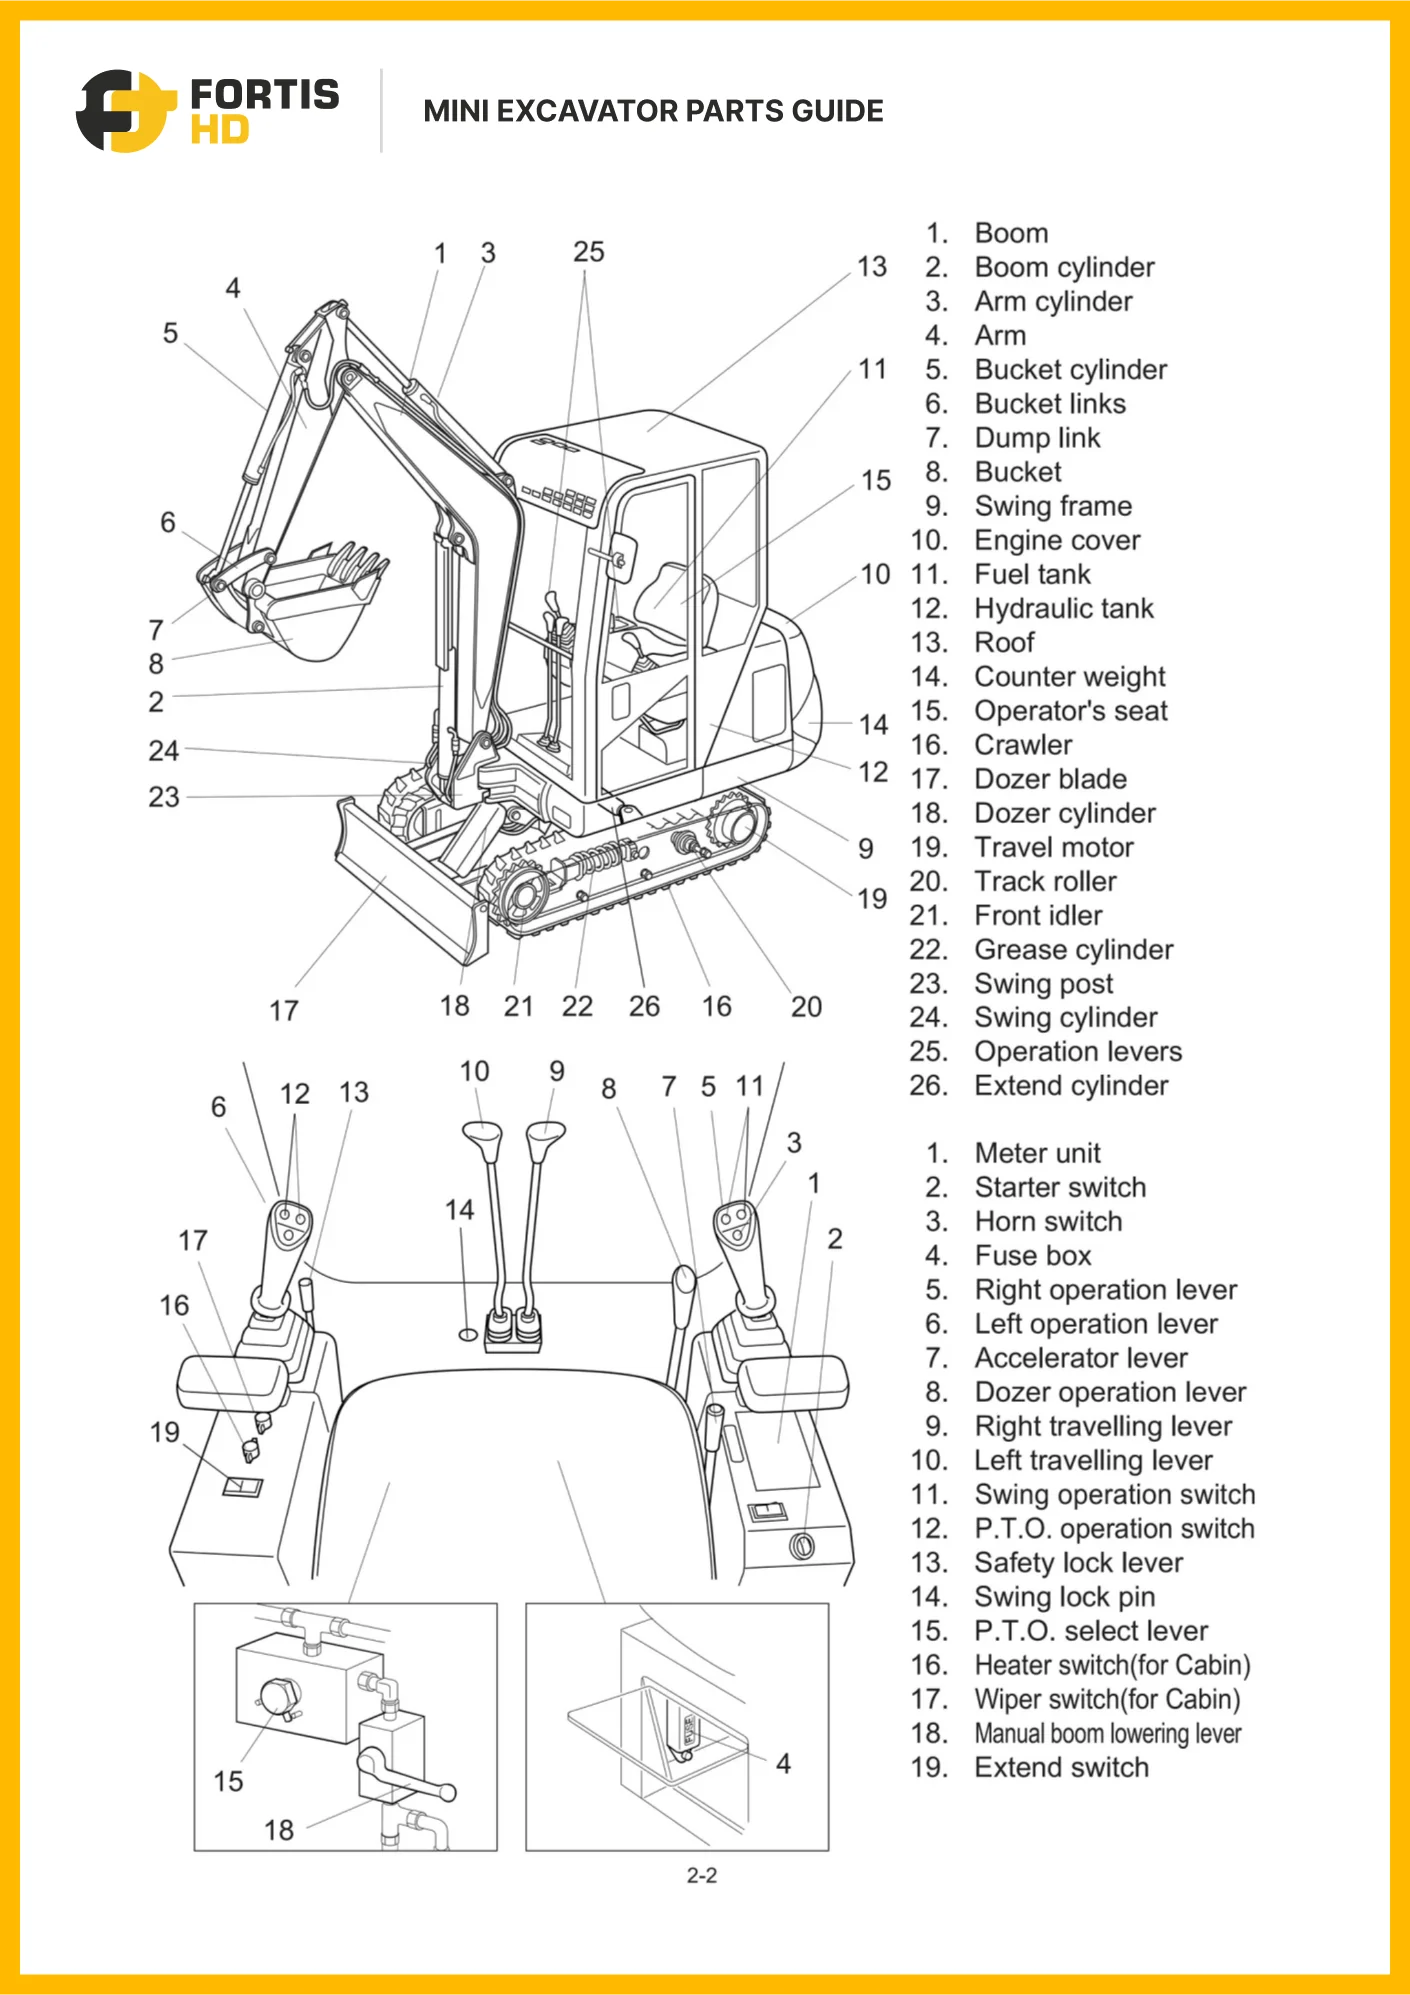 Mini excavator parts diagram.